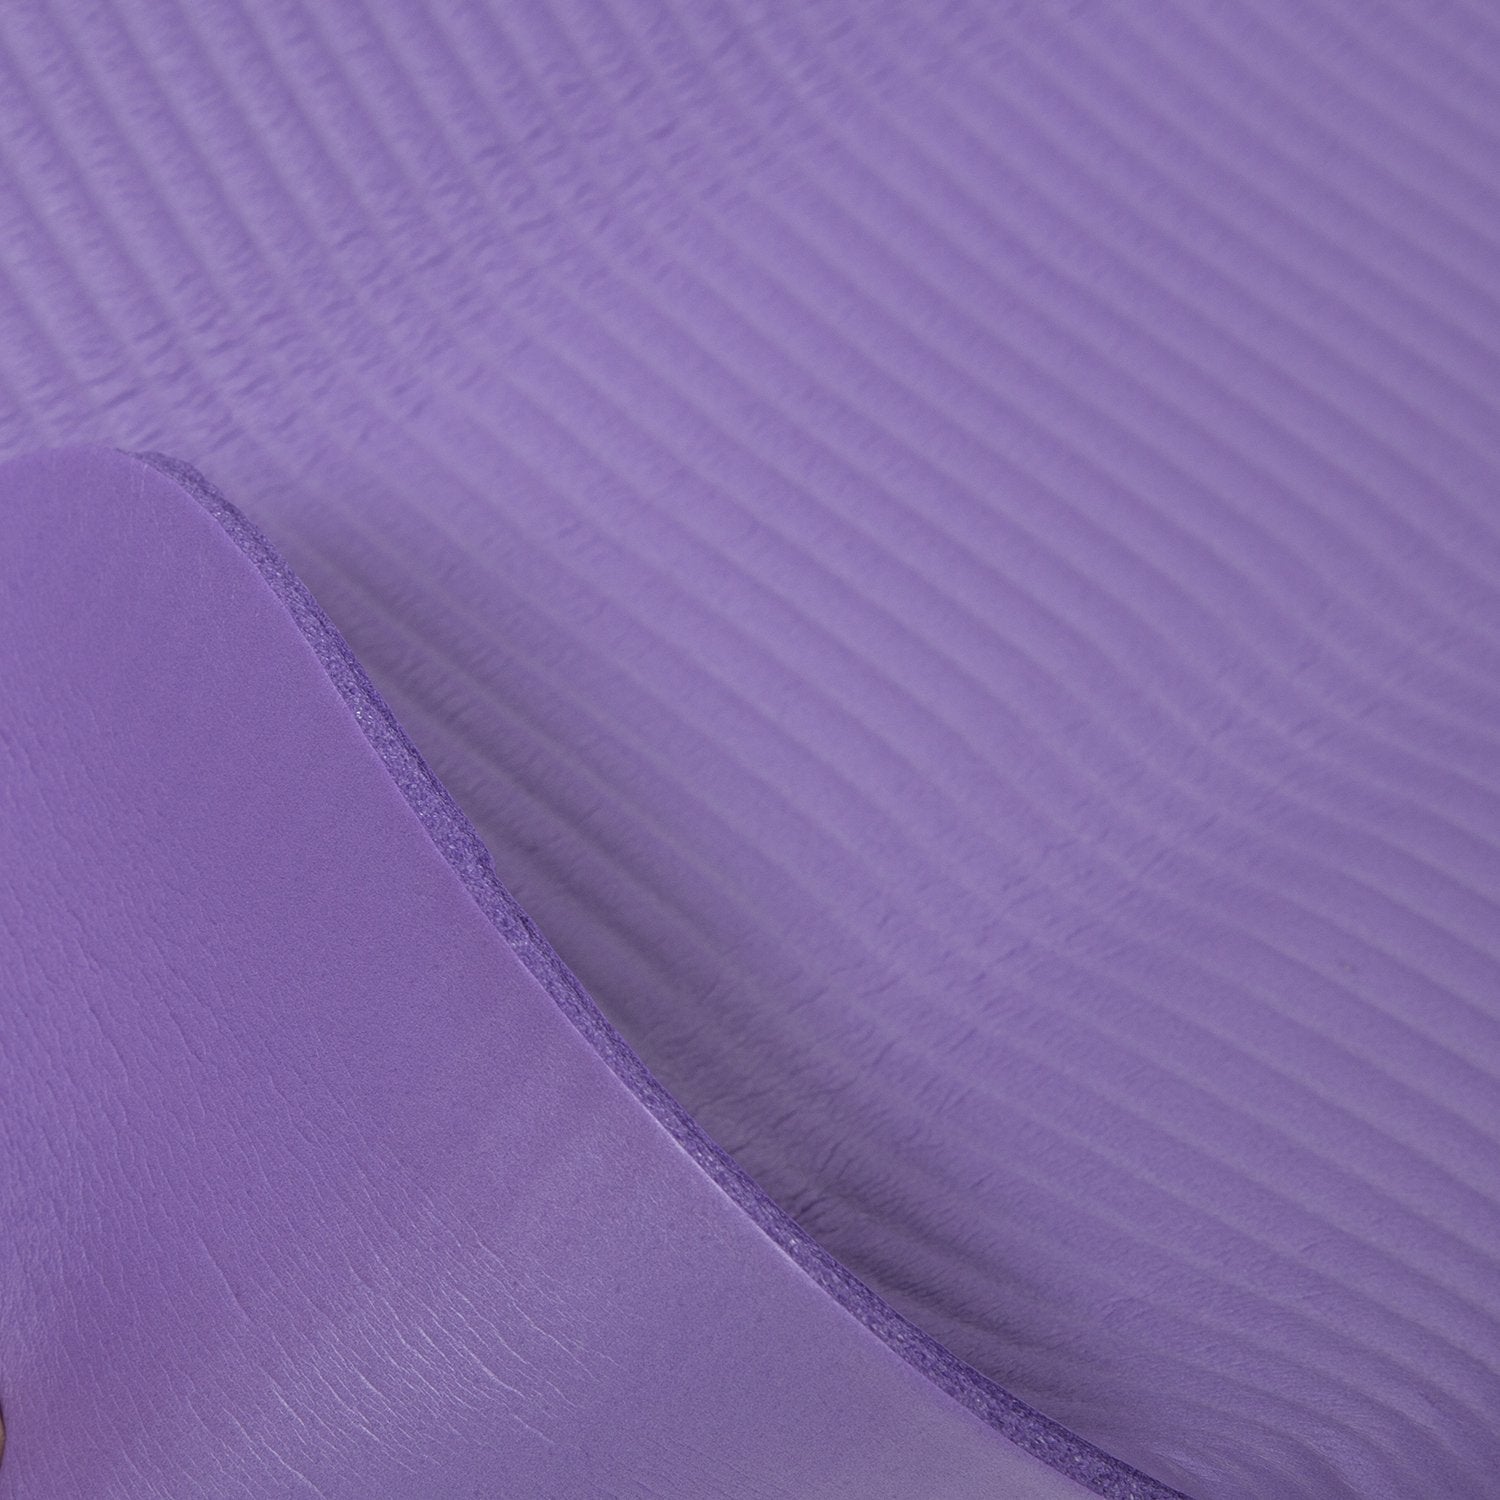 Purple Non-Slip Yoga Mat 1cm Thick With Handle Bravich LTD.